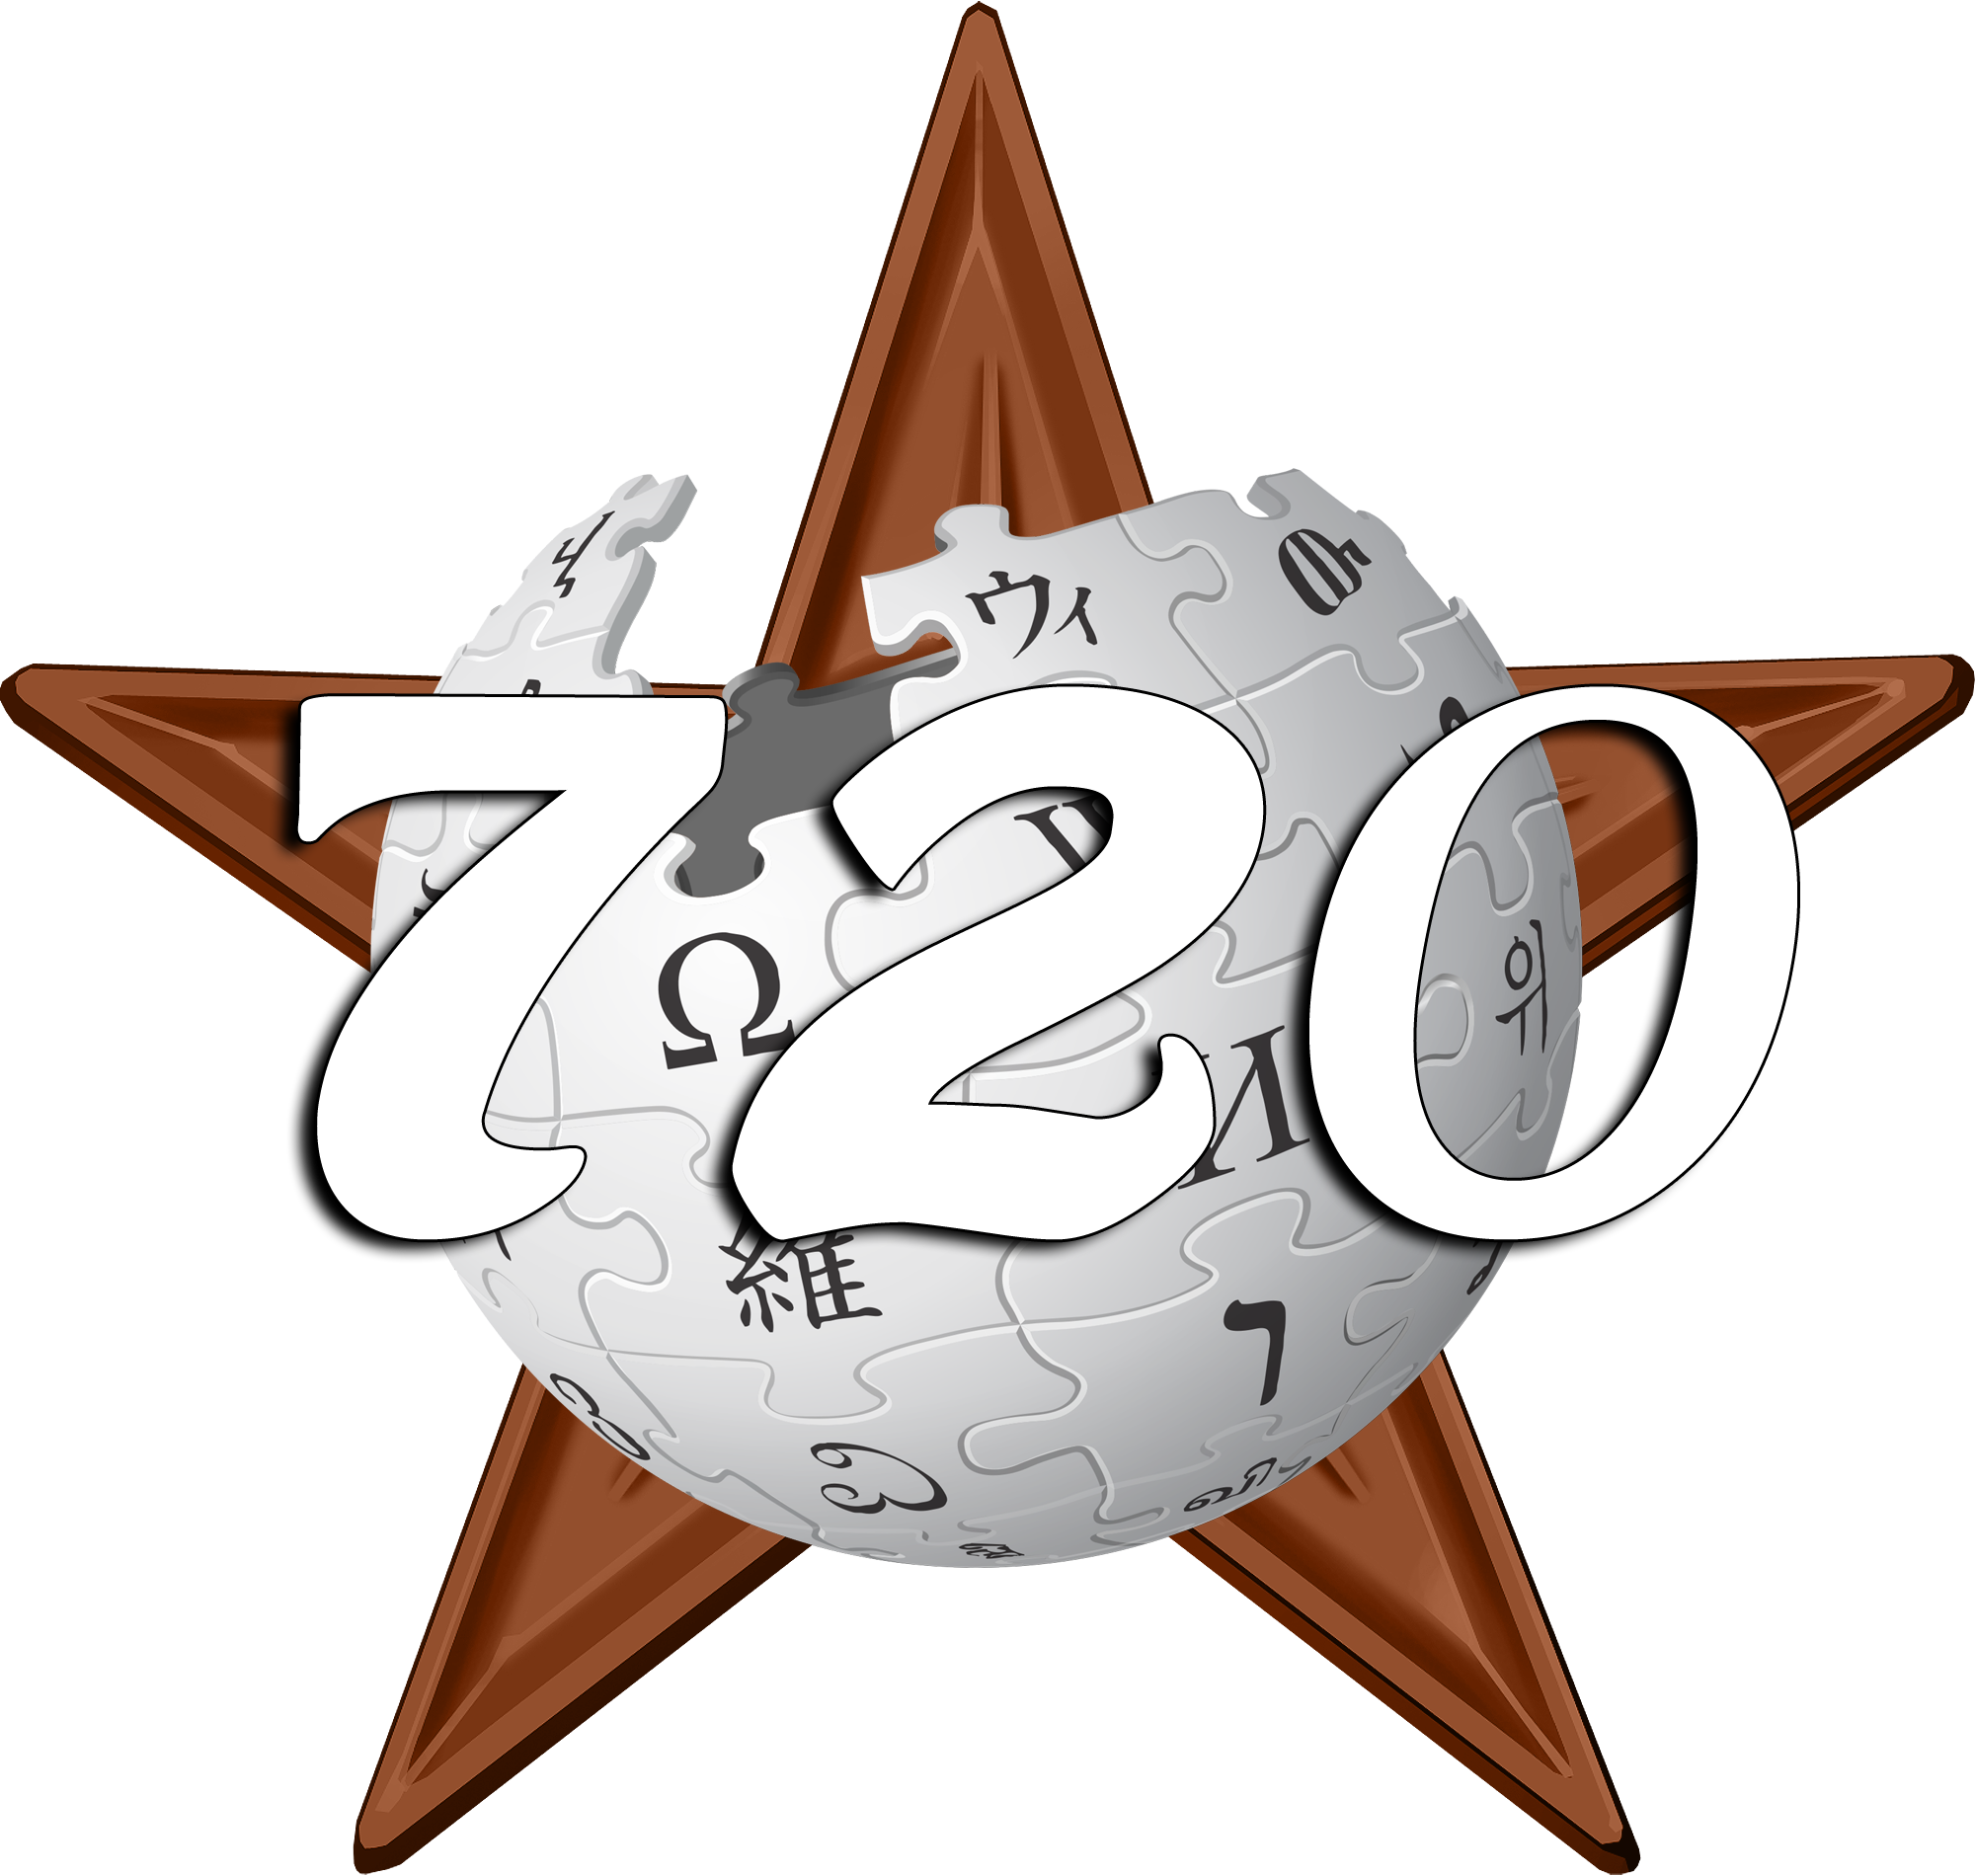 Орден #1 «Орден проекта «720 статей за год»», присвоен 1 января 2014 участником Kayir за «Творческих успехов!»